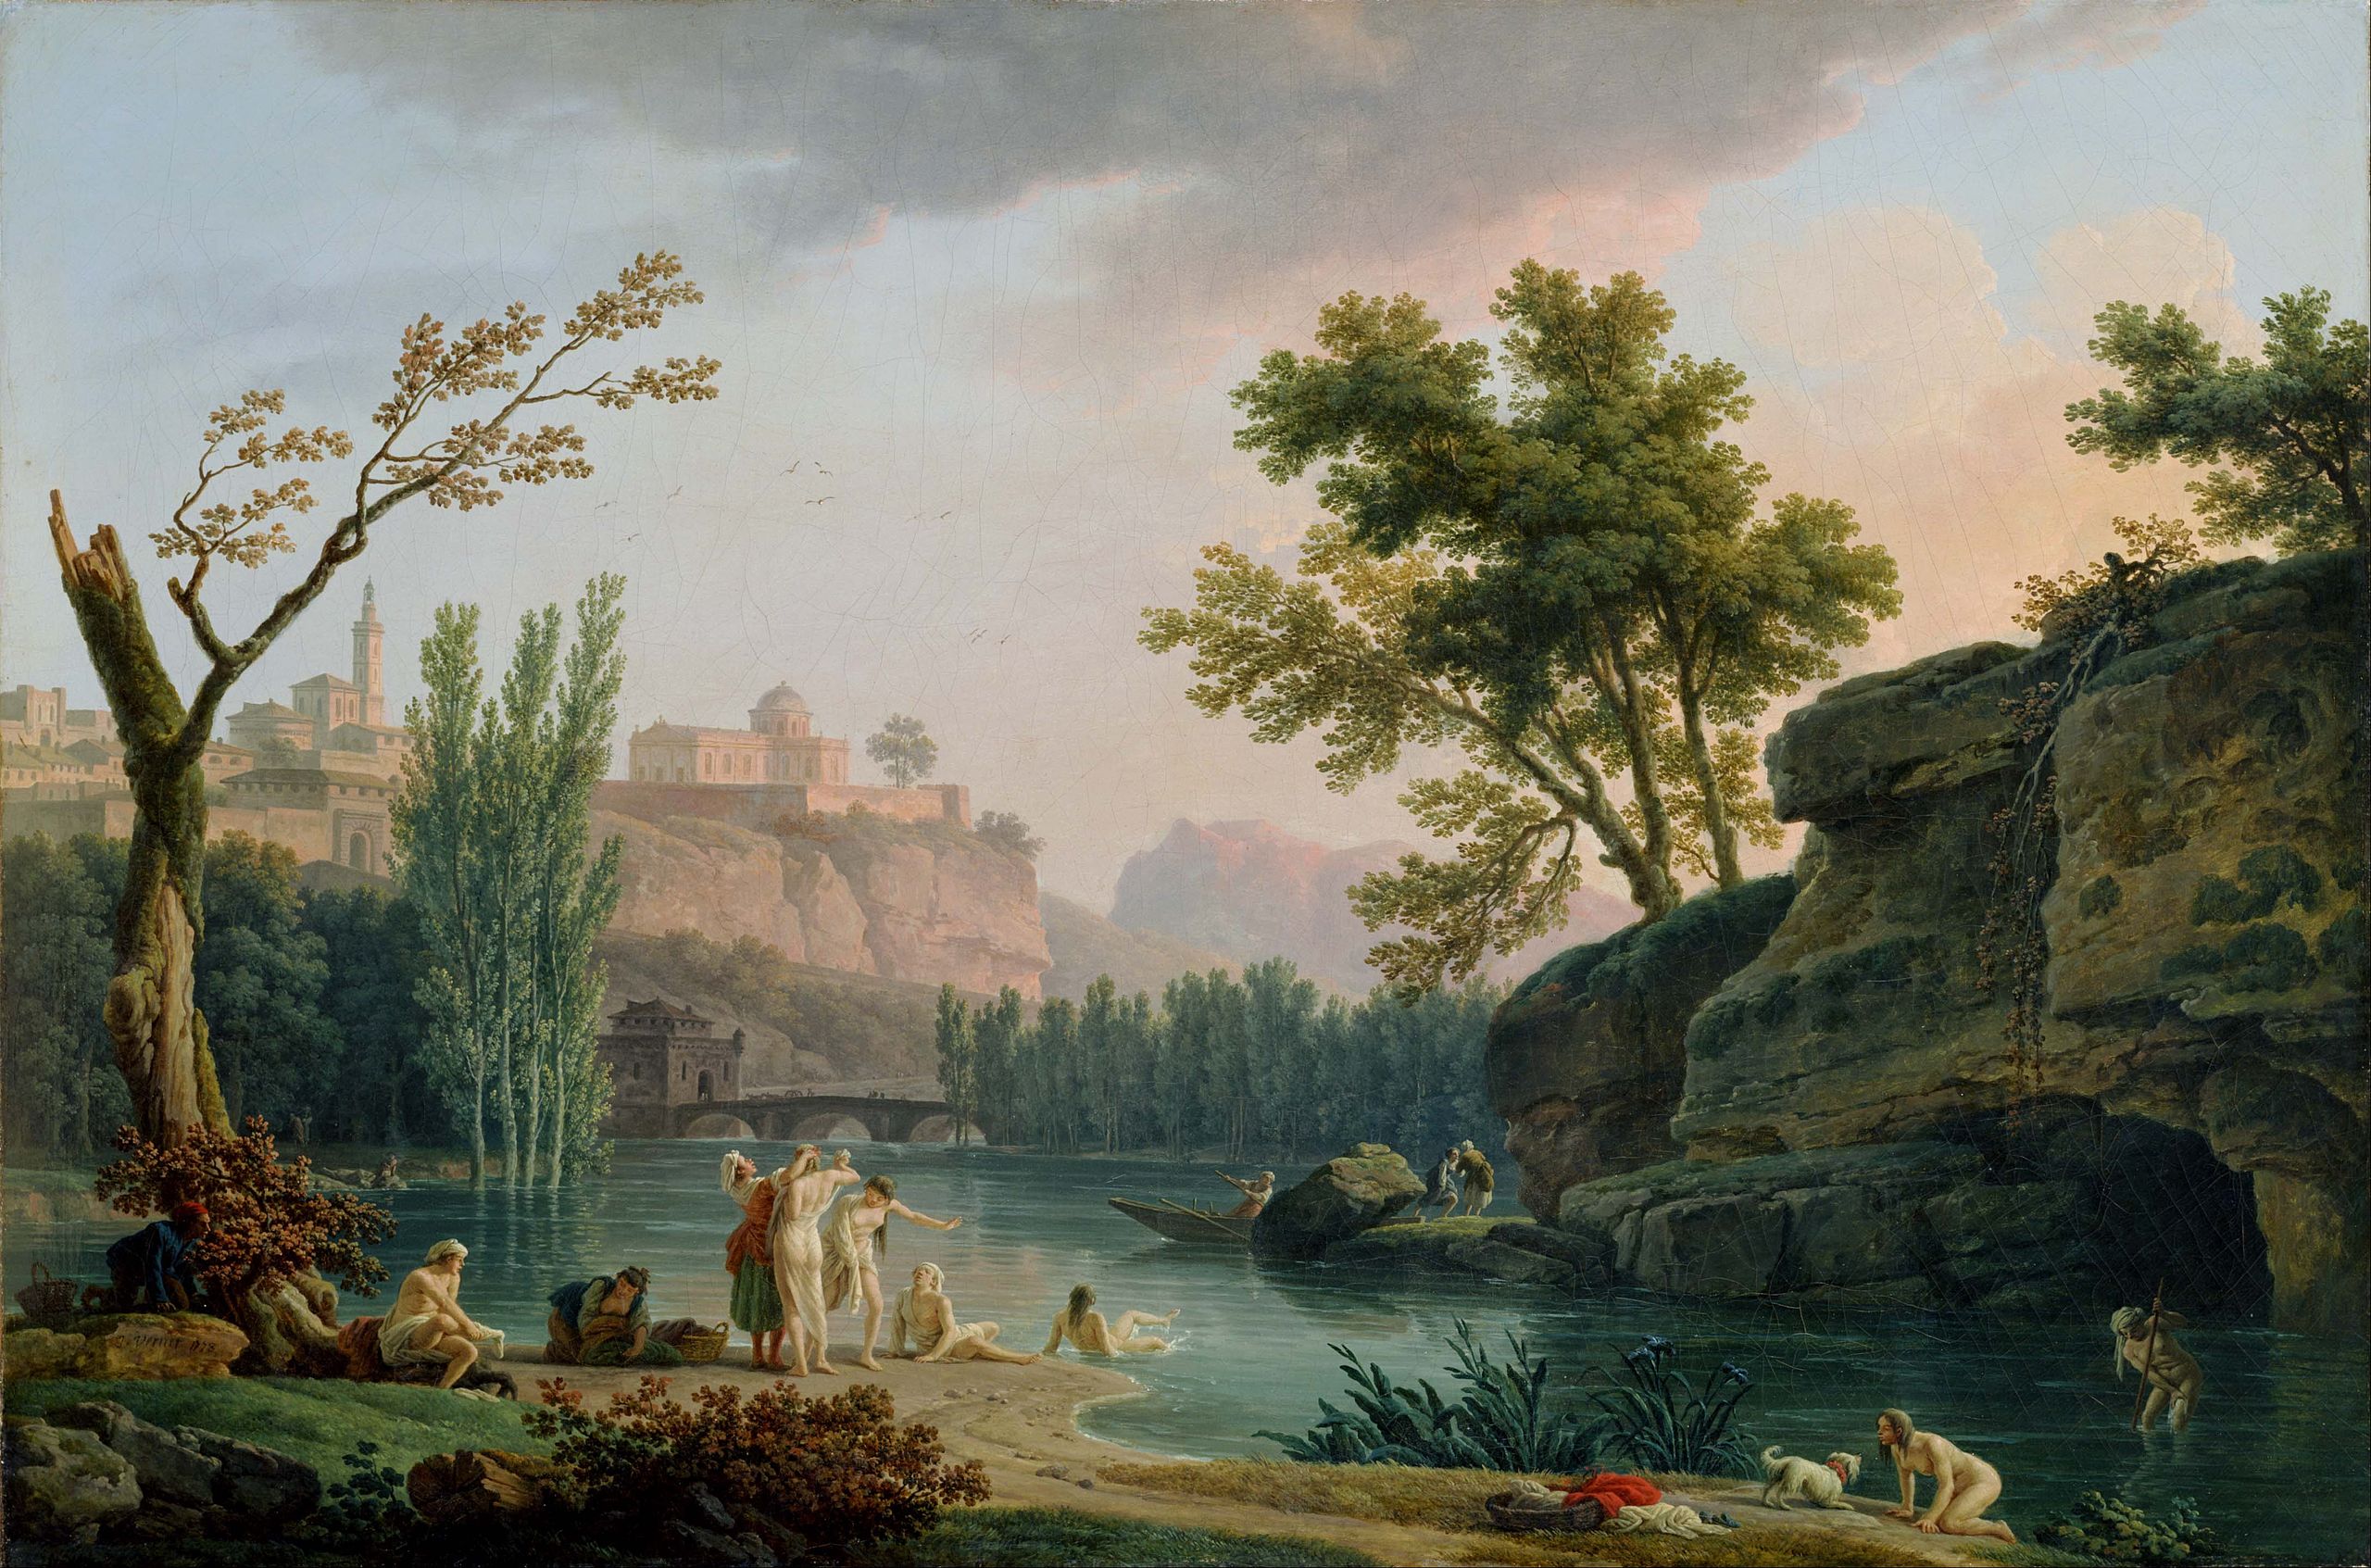 여름 저녁, 이탈리아의 풍경 by Claude-Joseph Vernet - 1773 - 133 x 89 cm 